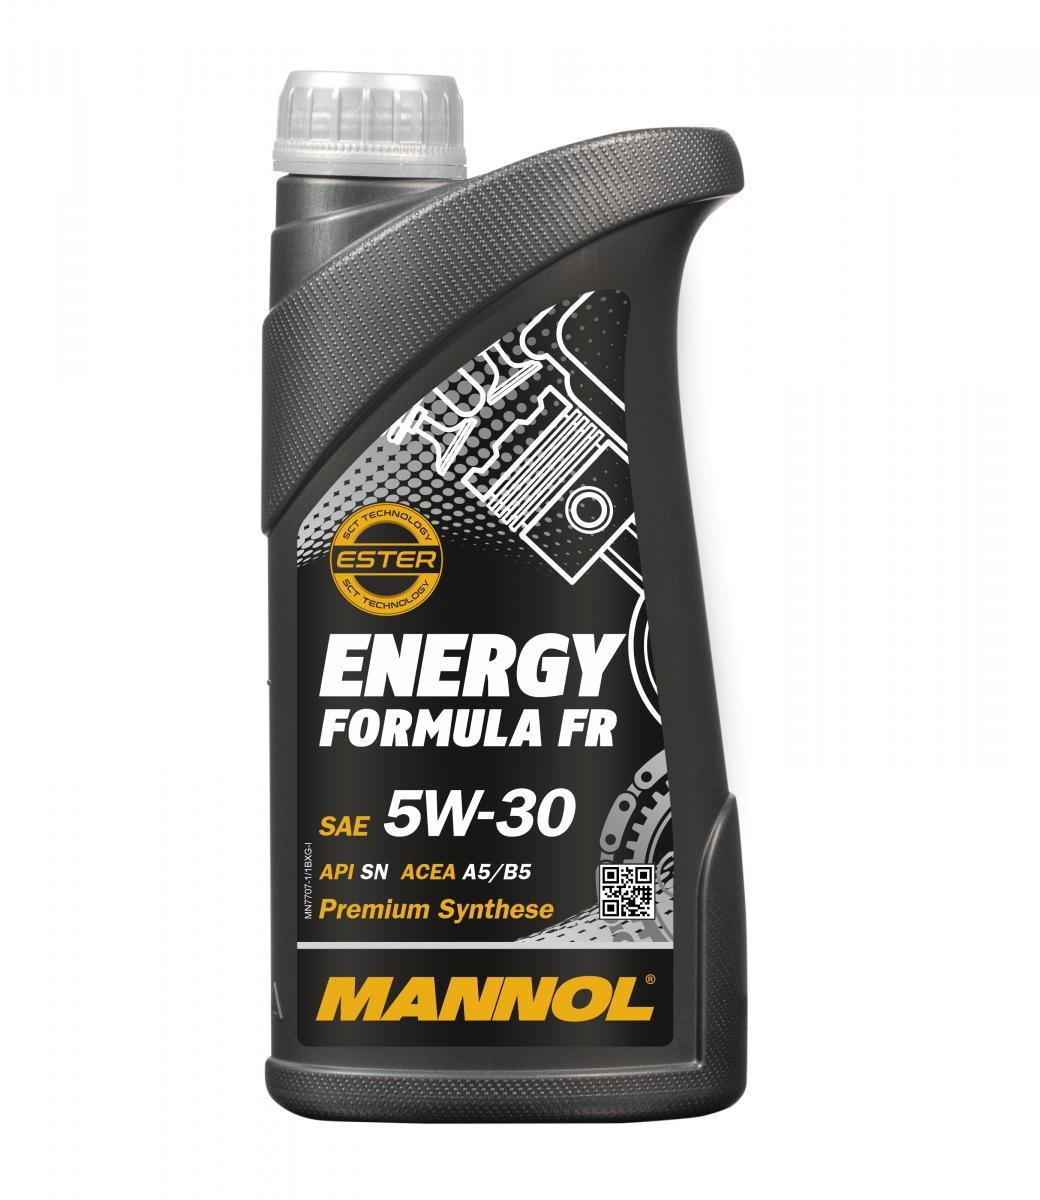 MANNOL MN7707-1 Moottoriöljy 5W-30, 1l, Synteettinen öljy Renault alkuperäistä laatua